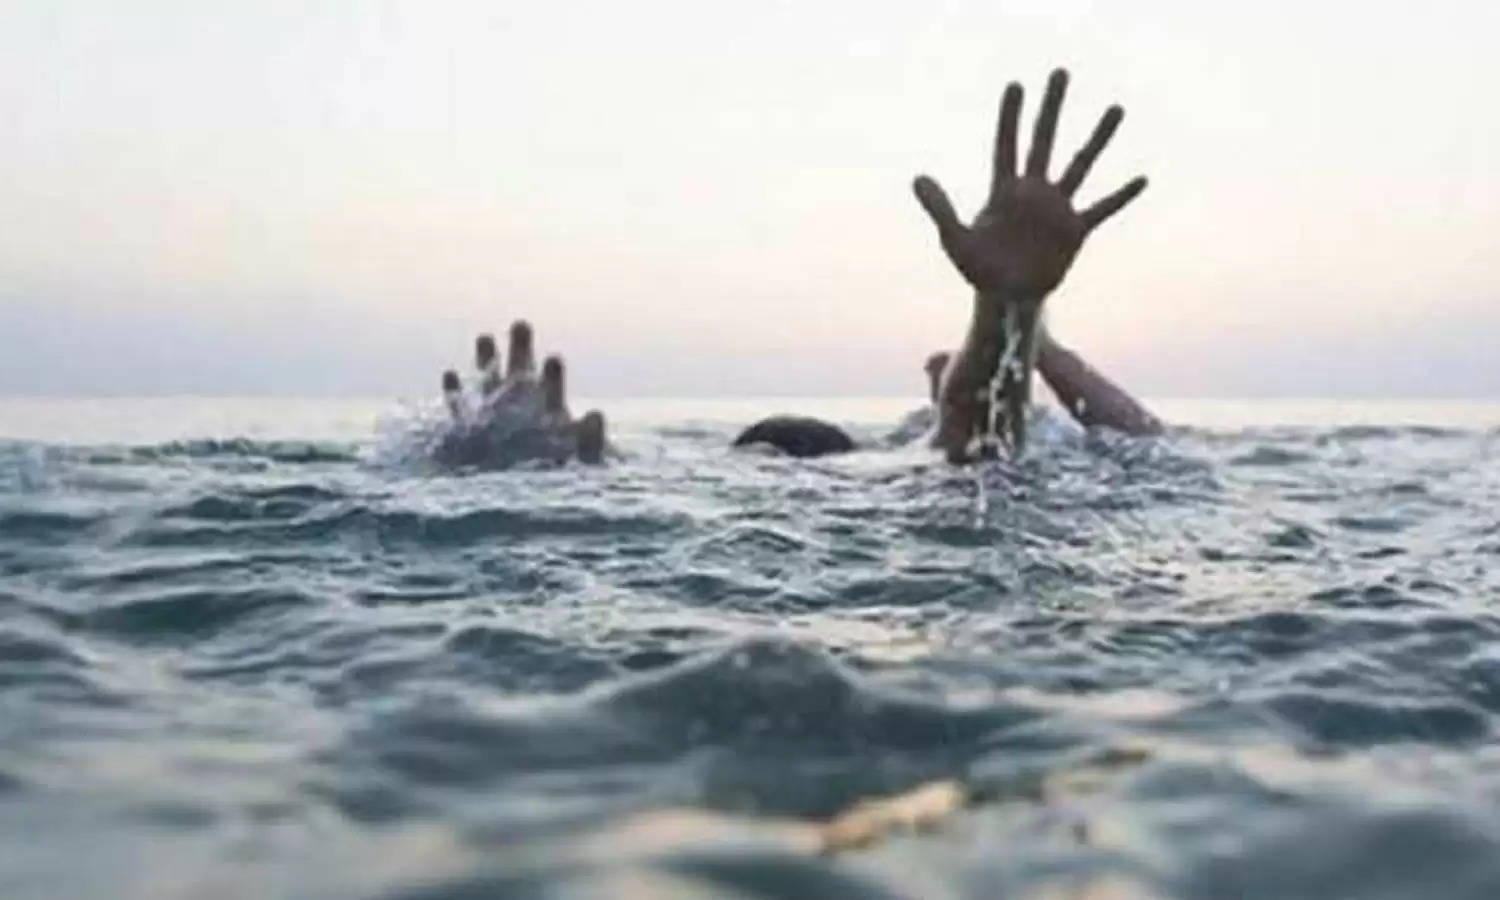 Uttarakhand News Bulletin : गदेरे में नहाने गए 2 बच्चों की डूबने से मौत, जानिए श्रीनगर गढ़वाल की ऐसी ही तमाम खबरें... 